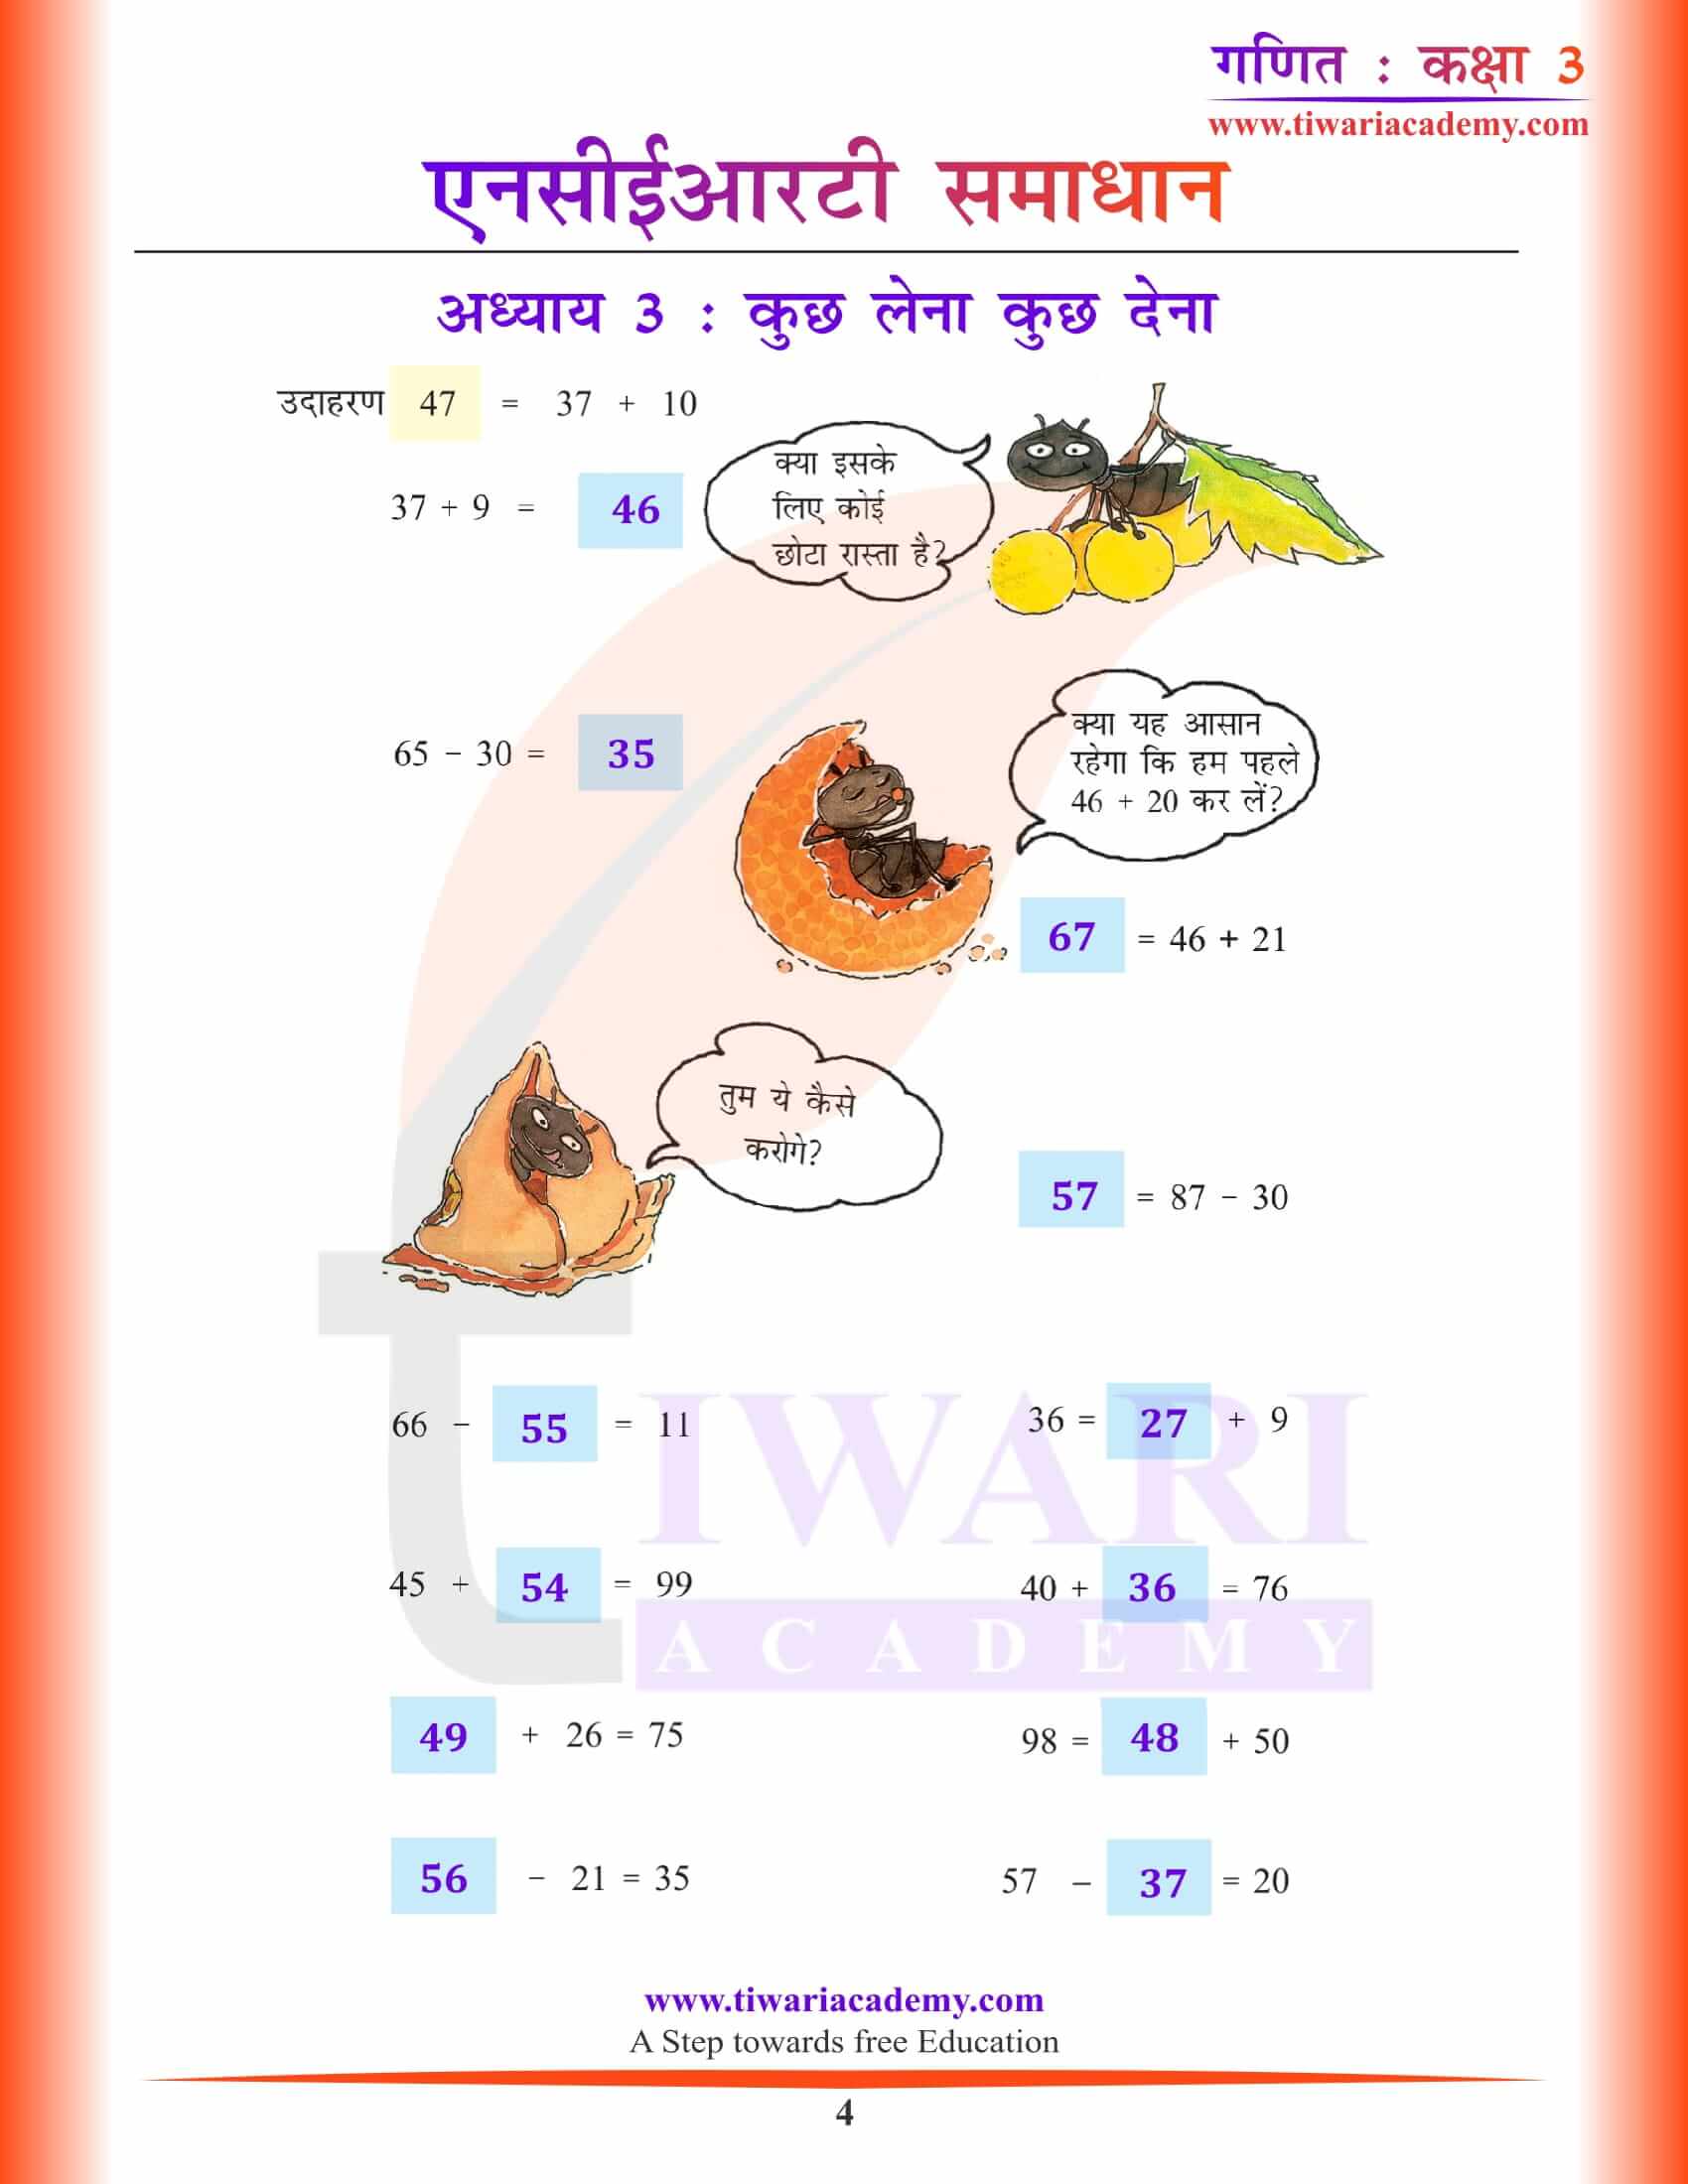 कक्षा 3 गणित अध्याय 3 हिंदी में हल